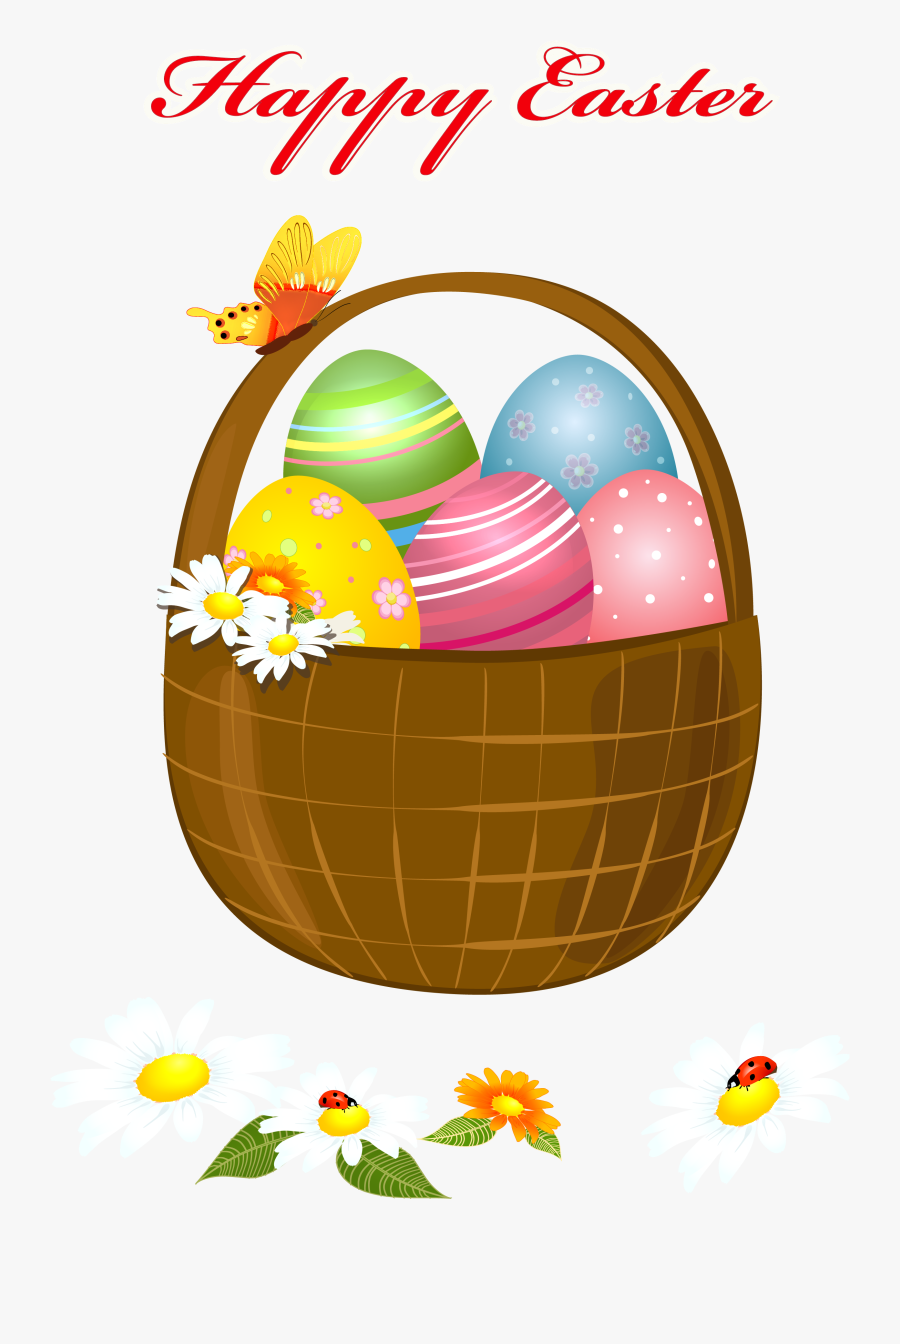 Basket Clipart Happy Easter - Easter Basket Clipart Happy Easter, Transparent Clipart